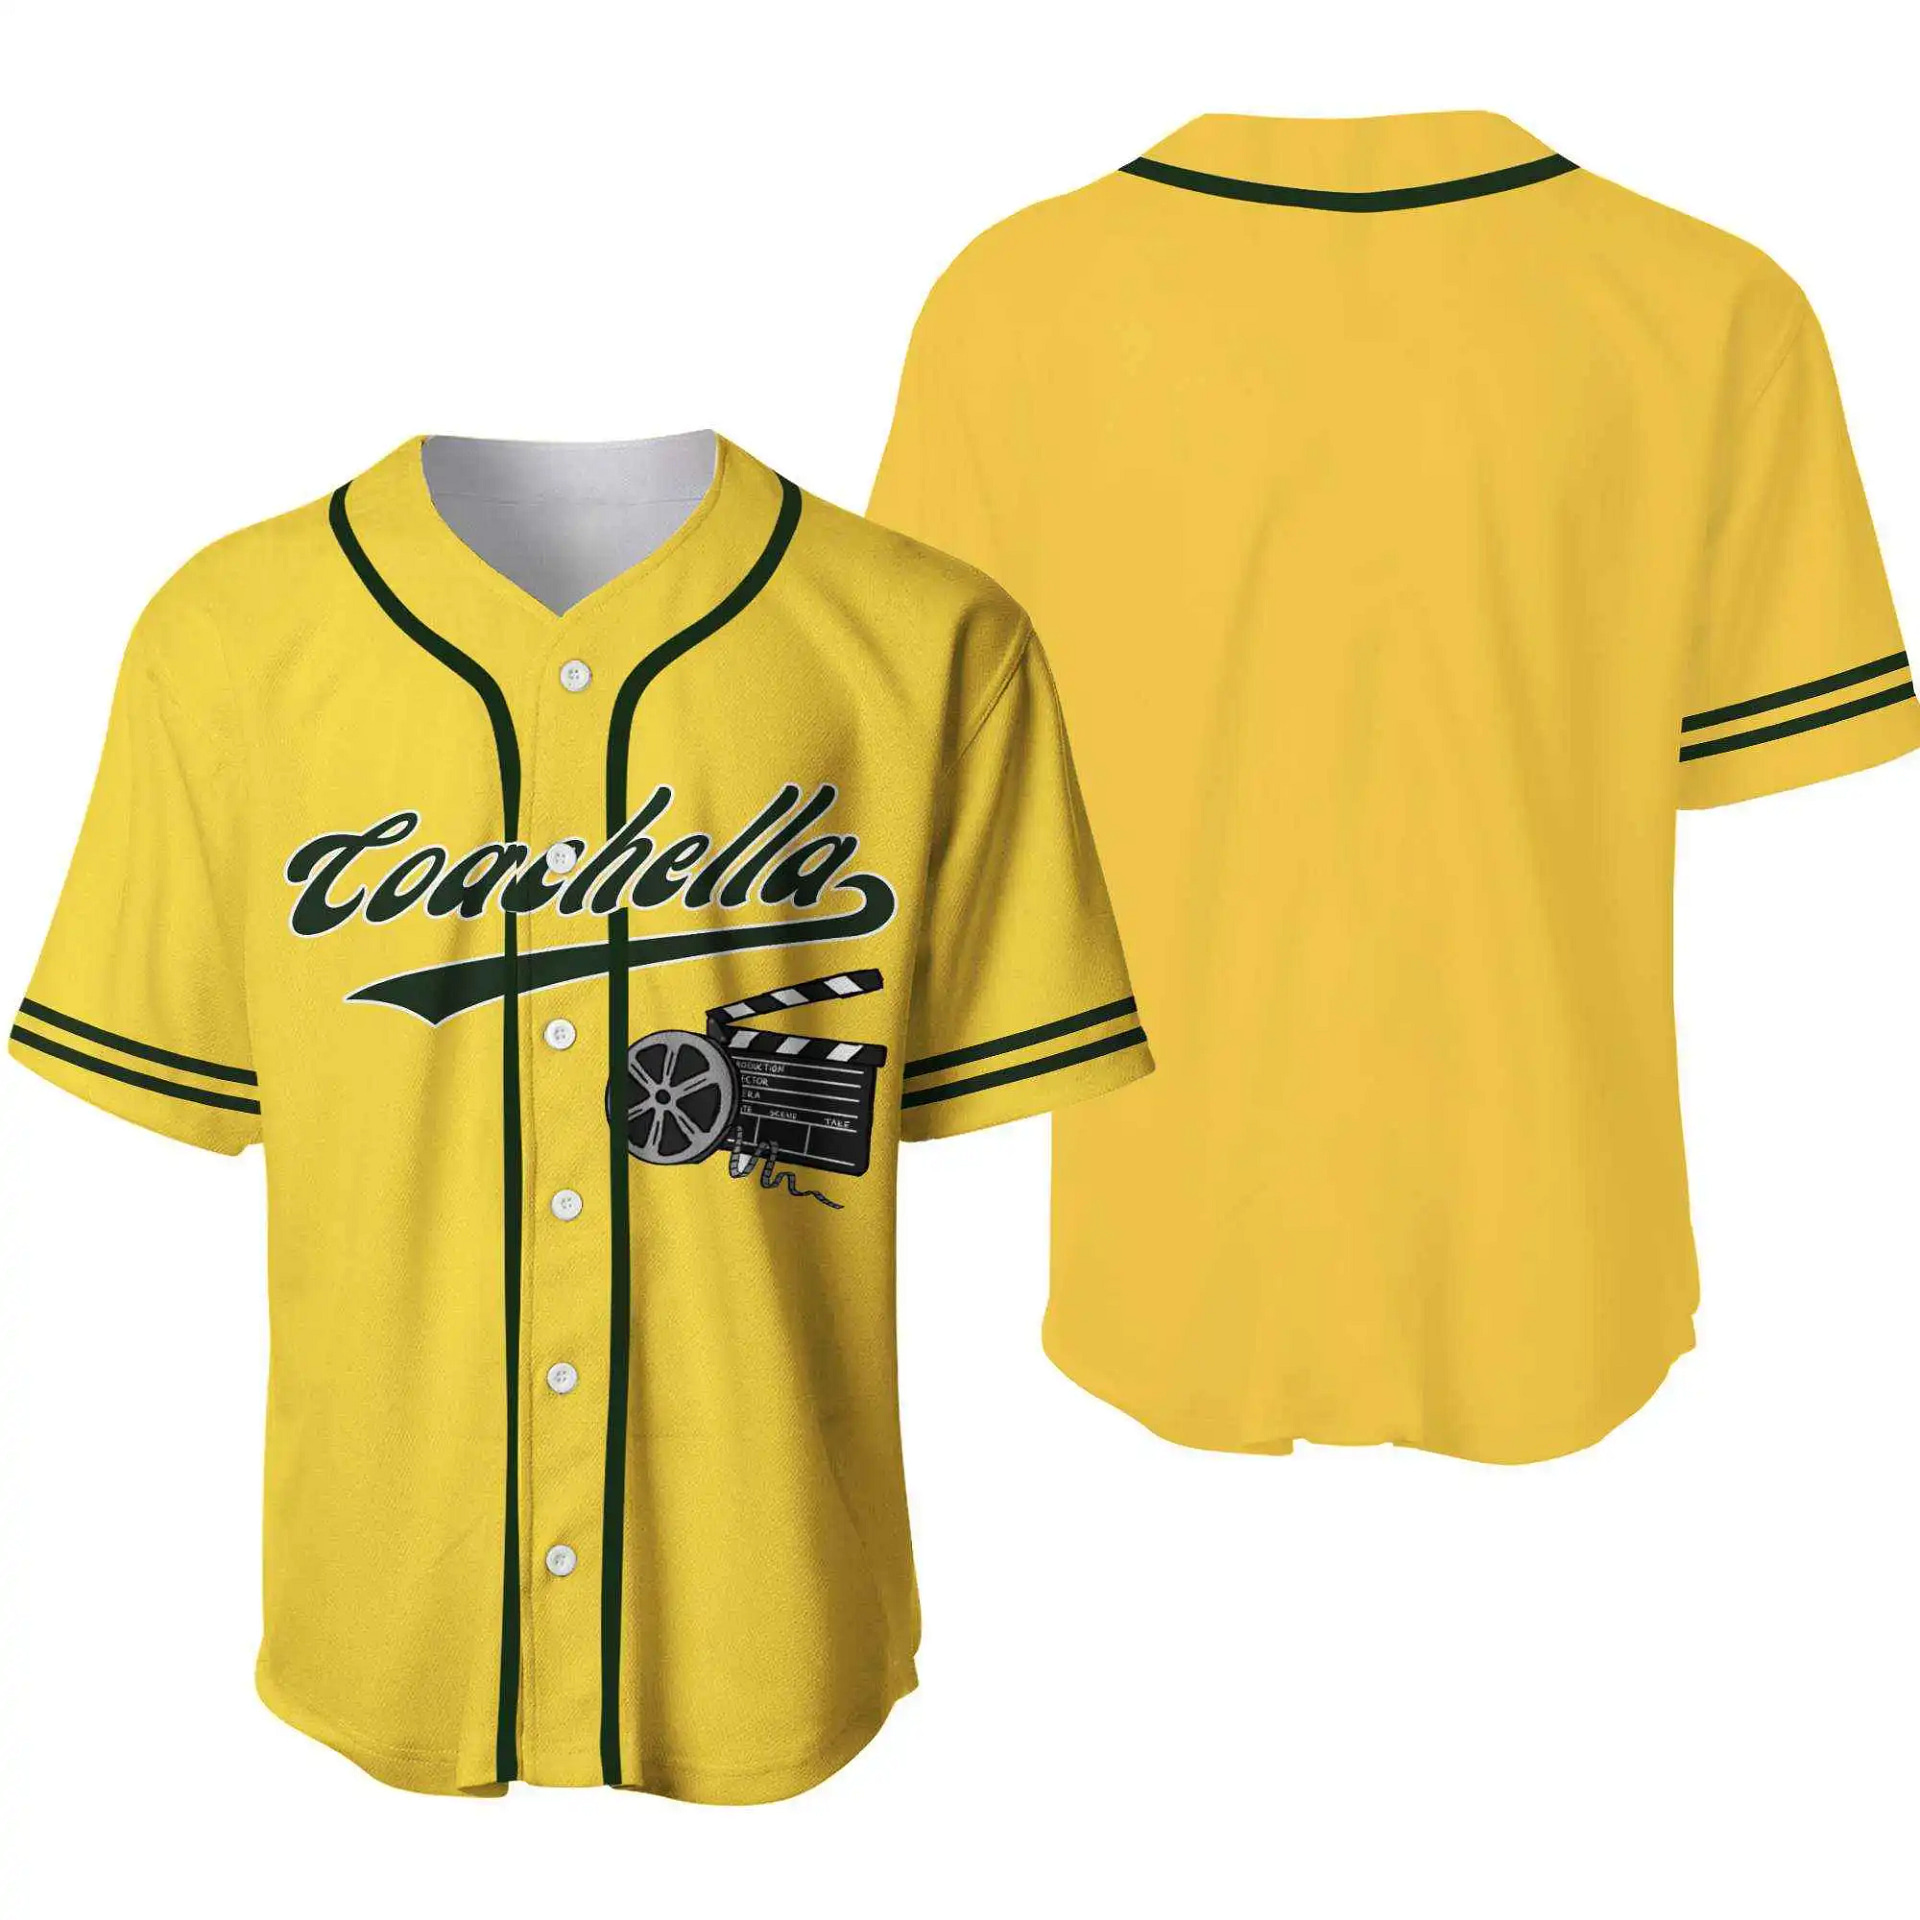 Coachella And Film Logo Baseball Jersey